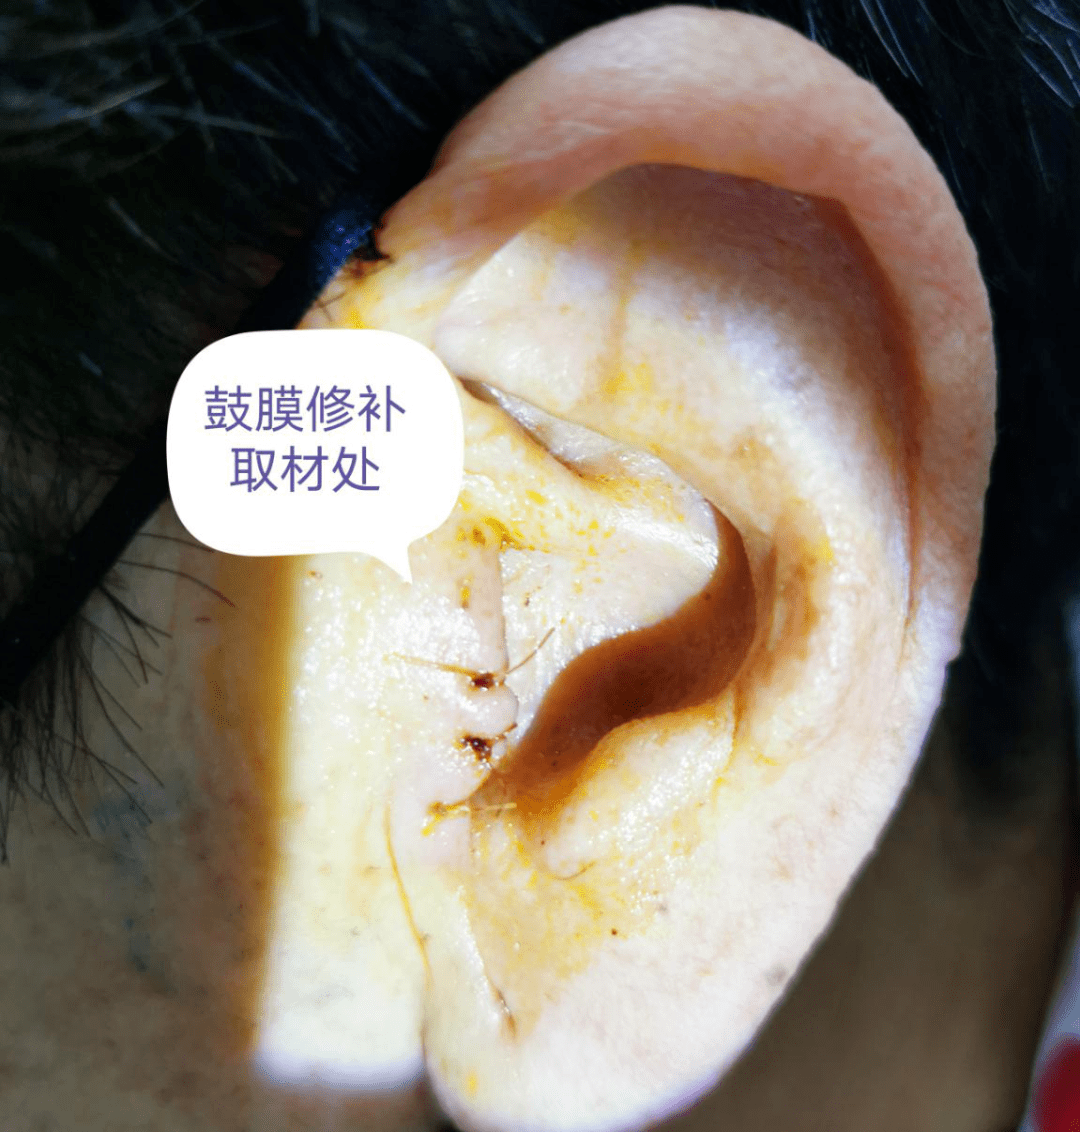 人工听骨形状图片